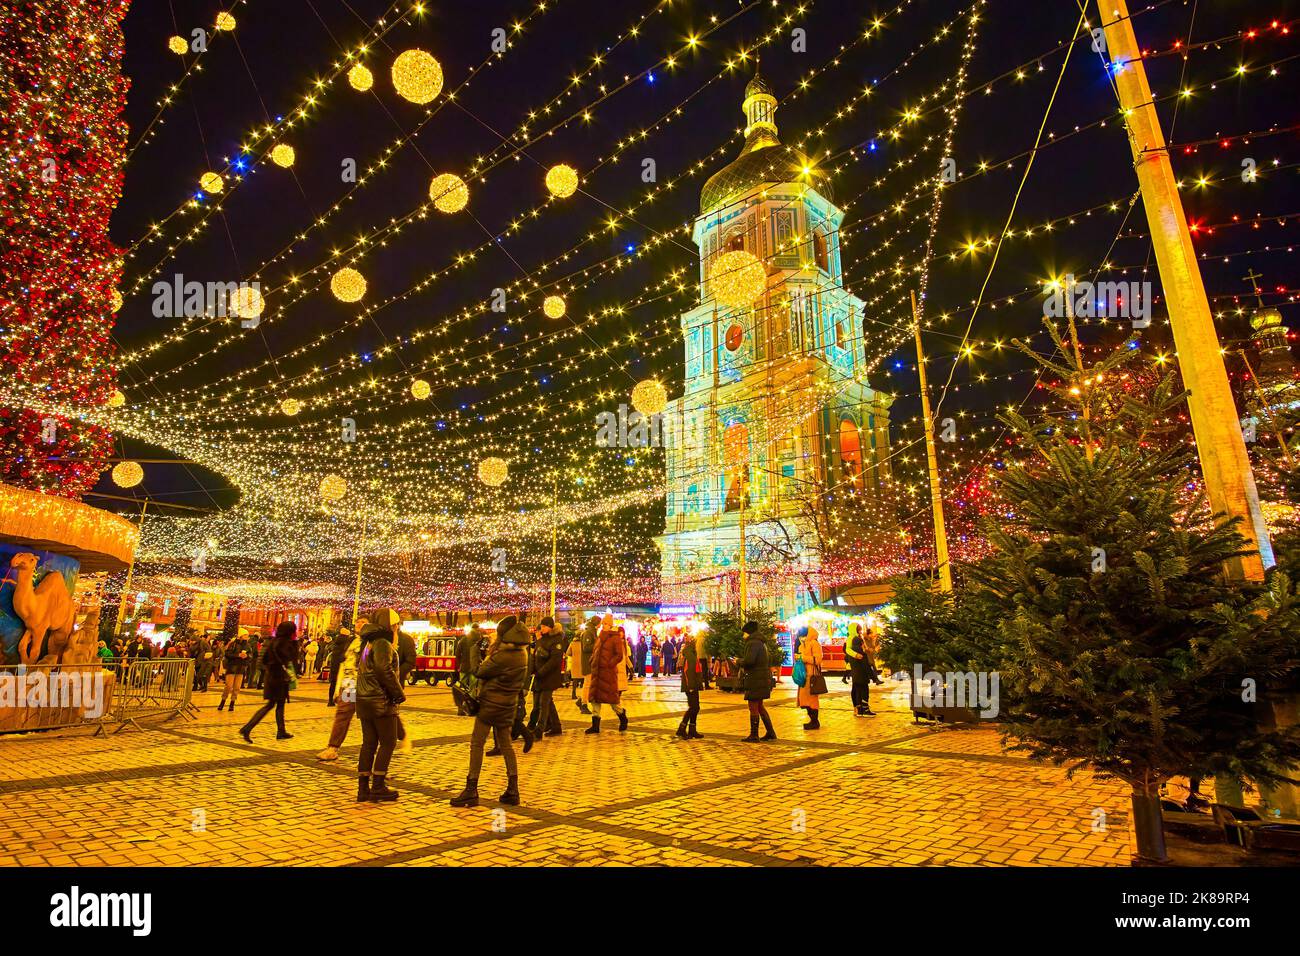 KIEV, UCRANIA - 28 DE DICIEMBRE de 2021: La gente camina alrededor del árbol de Navidad principal en la Feria de Navidad en la Plaza de Sofía, el 28 de diciembre en Kiev, Ucrania Foto de stock